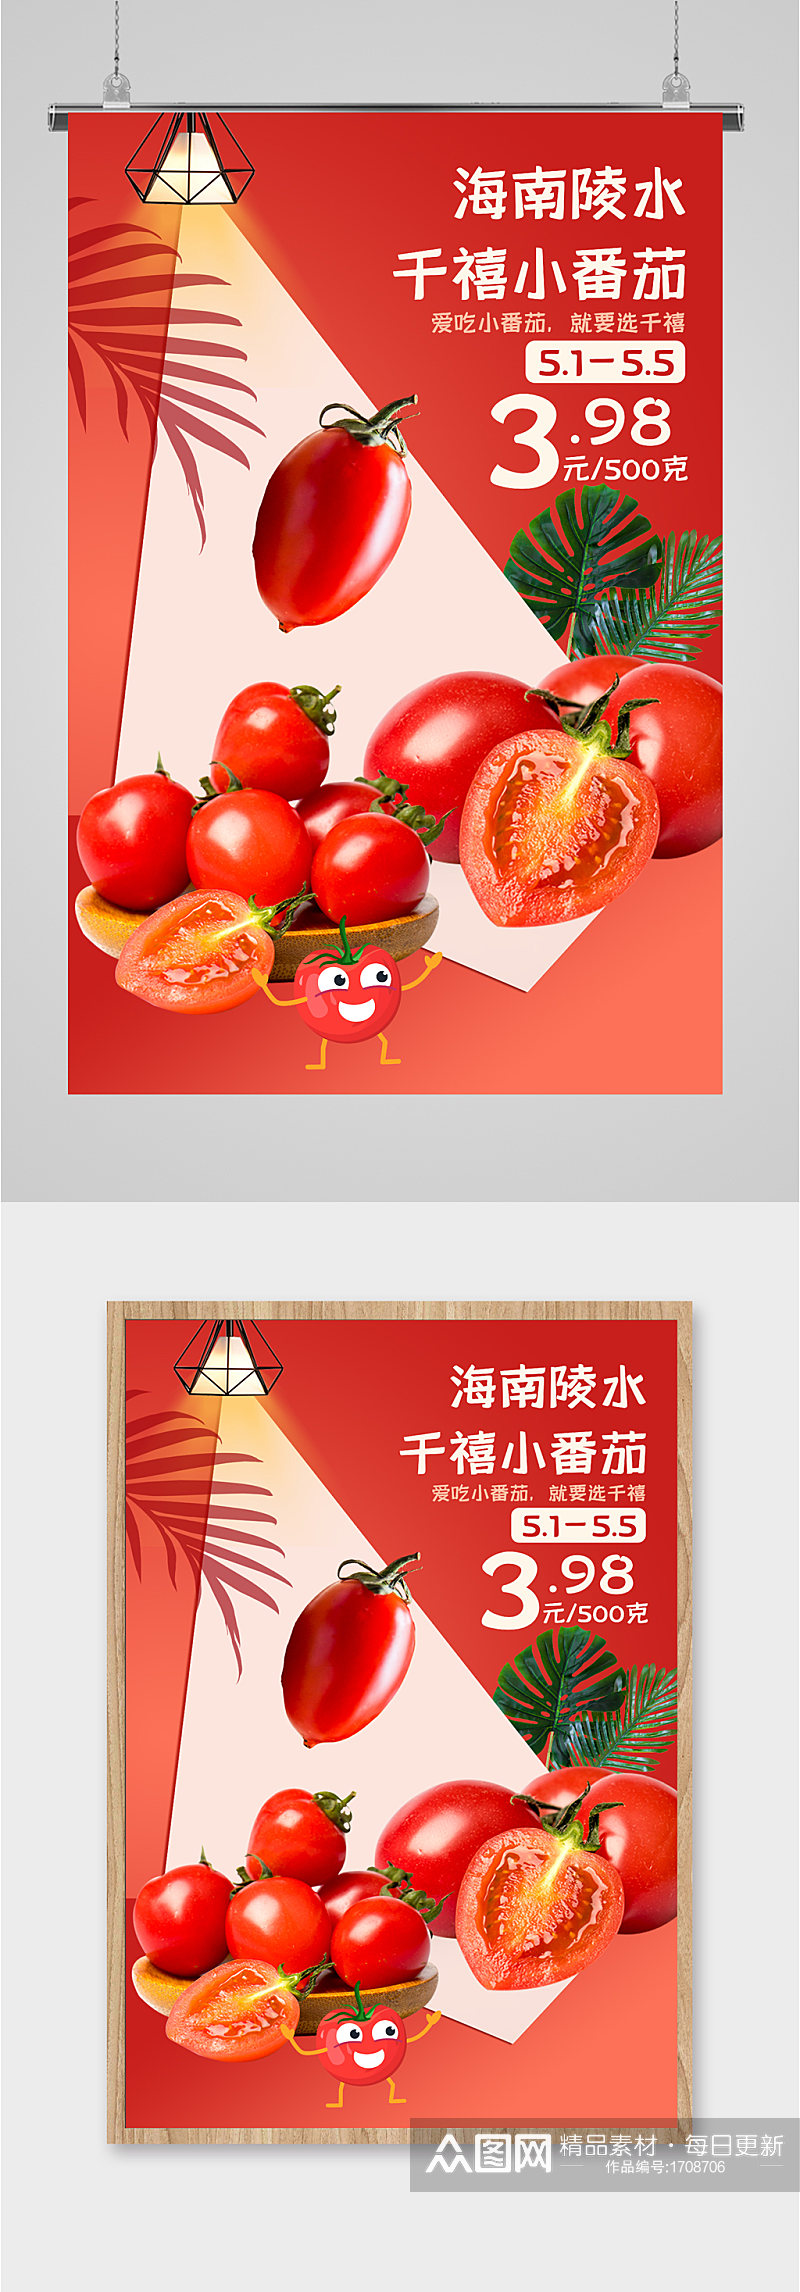 千禧小番茄宣传海报素材